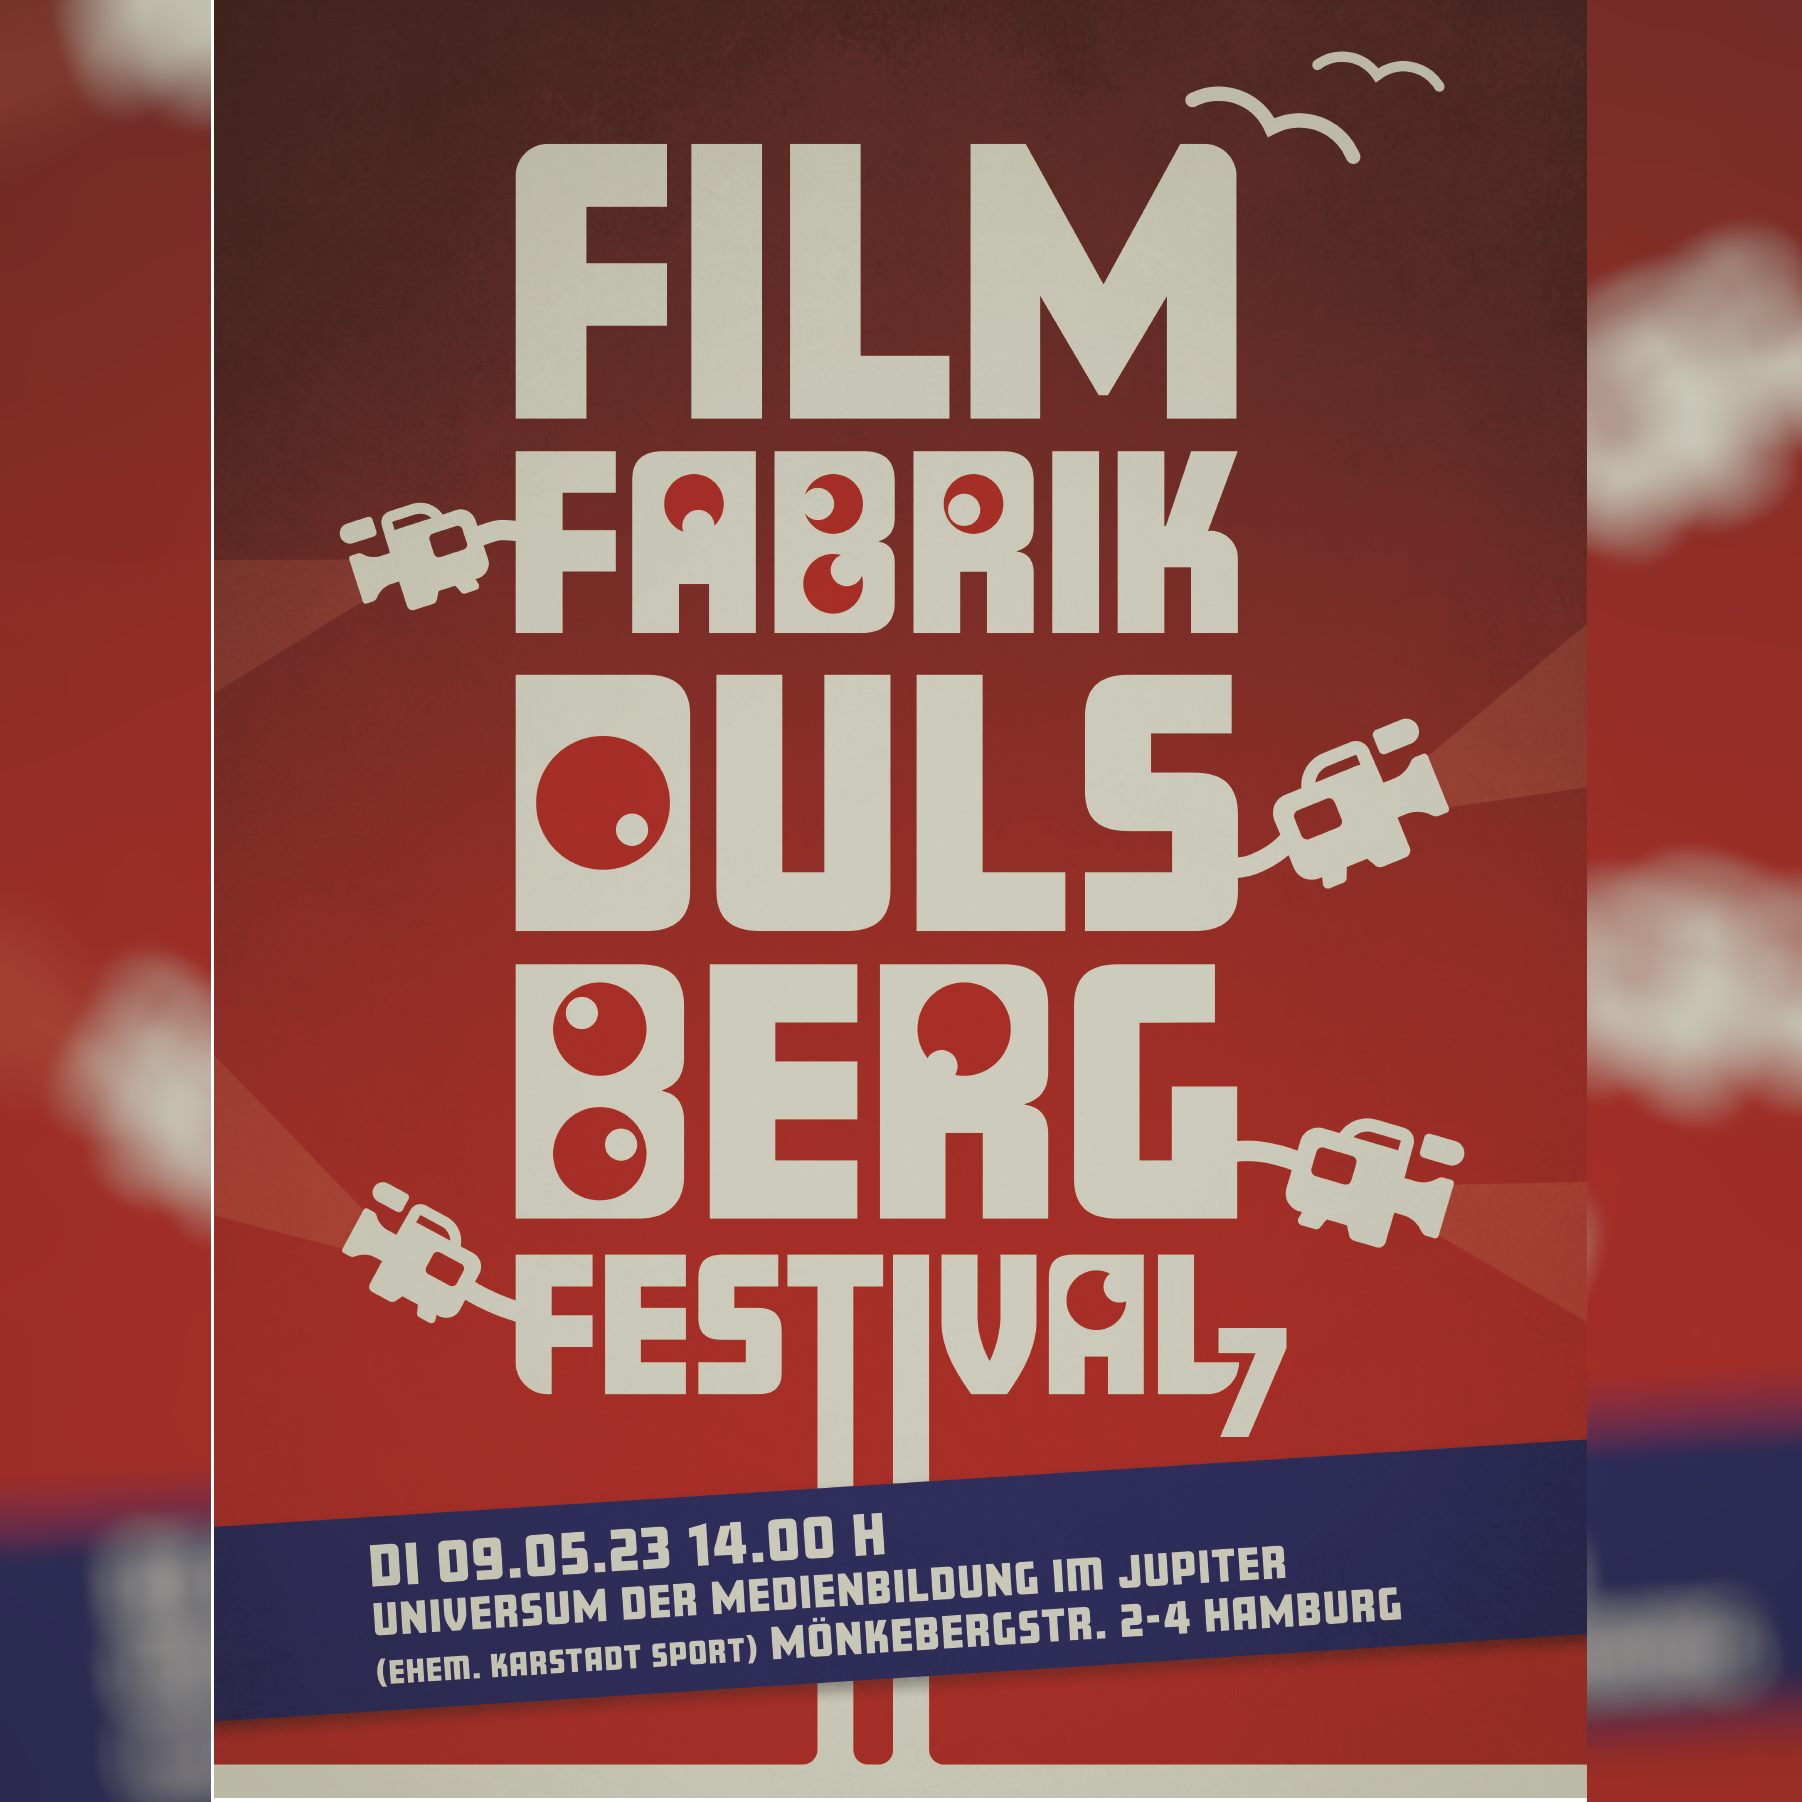 Filmfabrik Dulsberg Festival